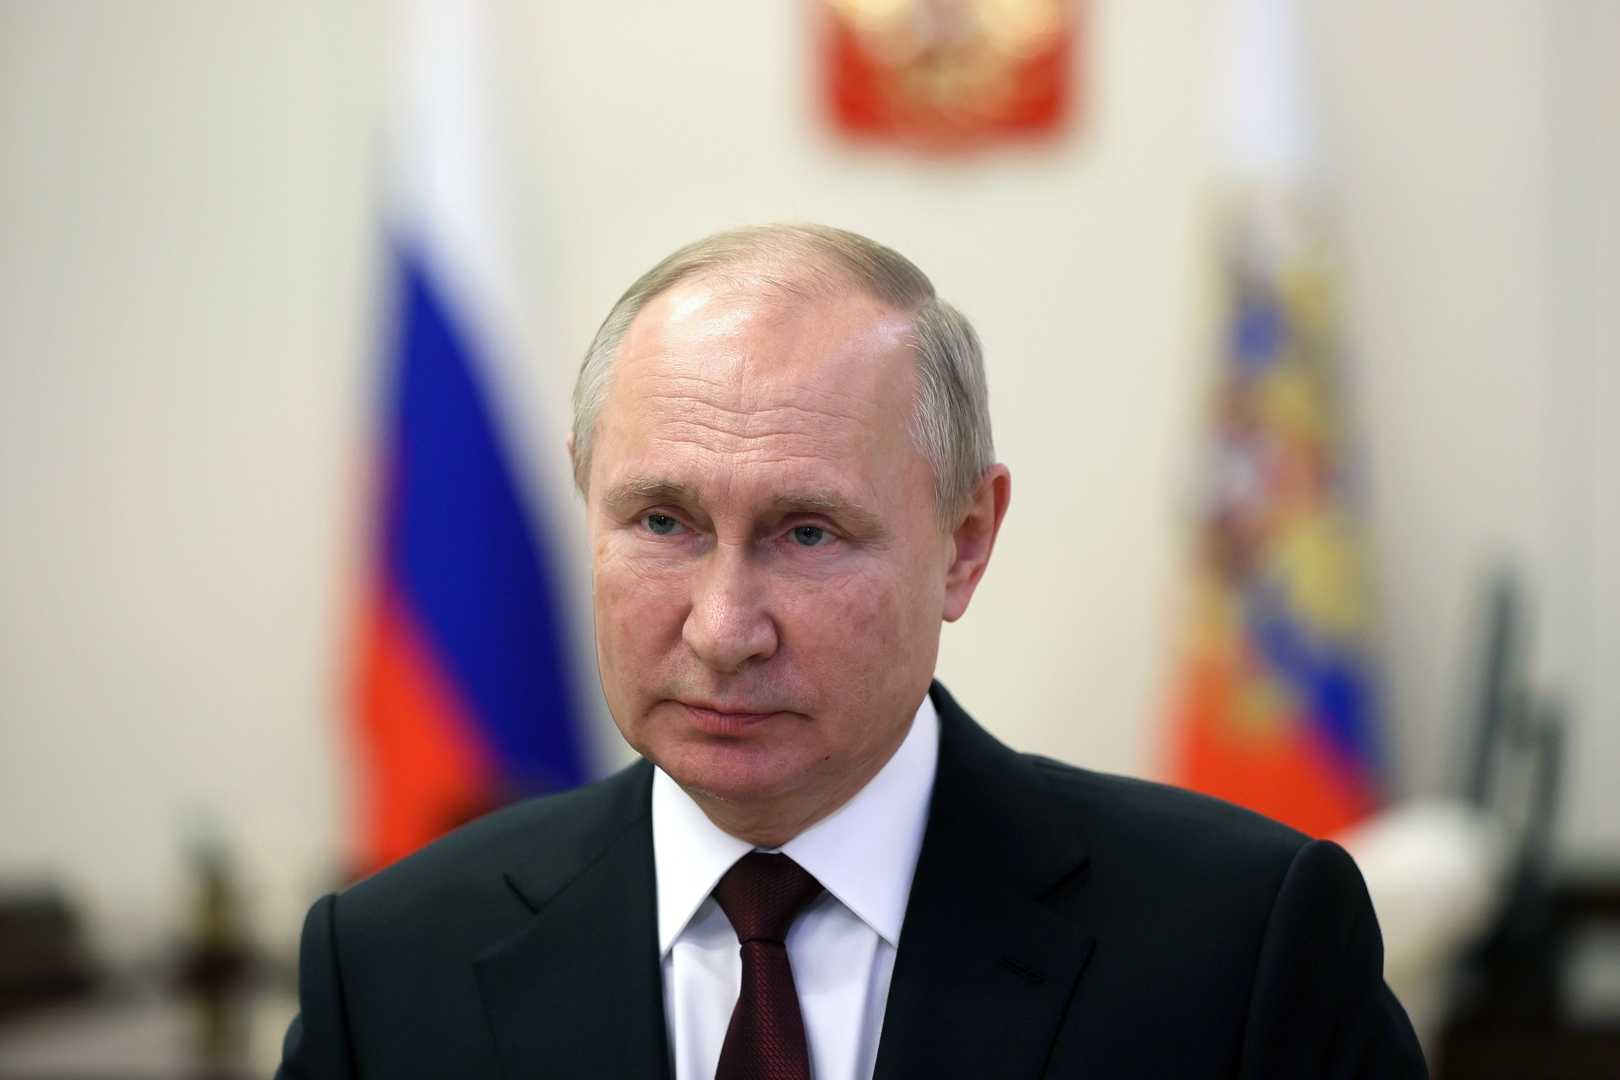 بوتين: الهجوم على كازاخستان عمل عدواني كان من الضروري الرد عليه دون تأخير